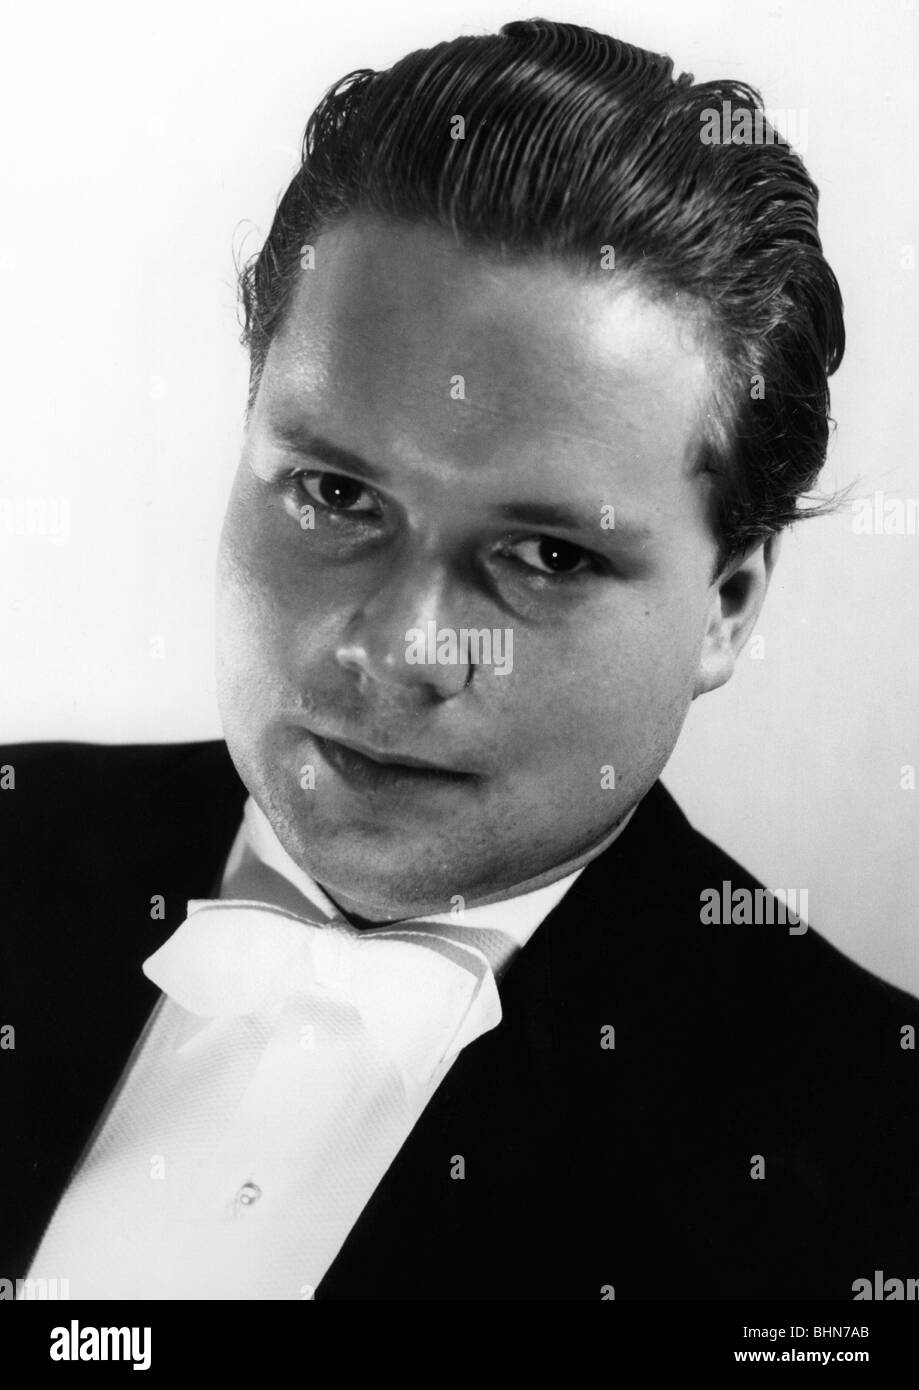 Fischer-Dieskau, Dietrich, 28.5.1925 - 18.5.2012, German opera singer, portrait, studio shot, 1950s, Stock Photo